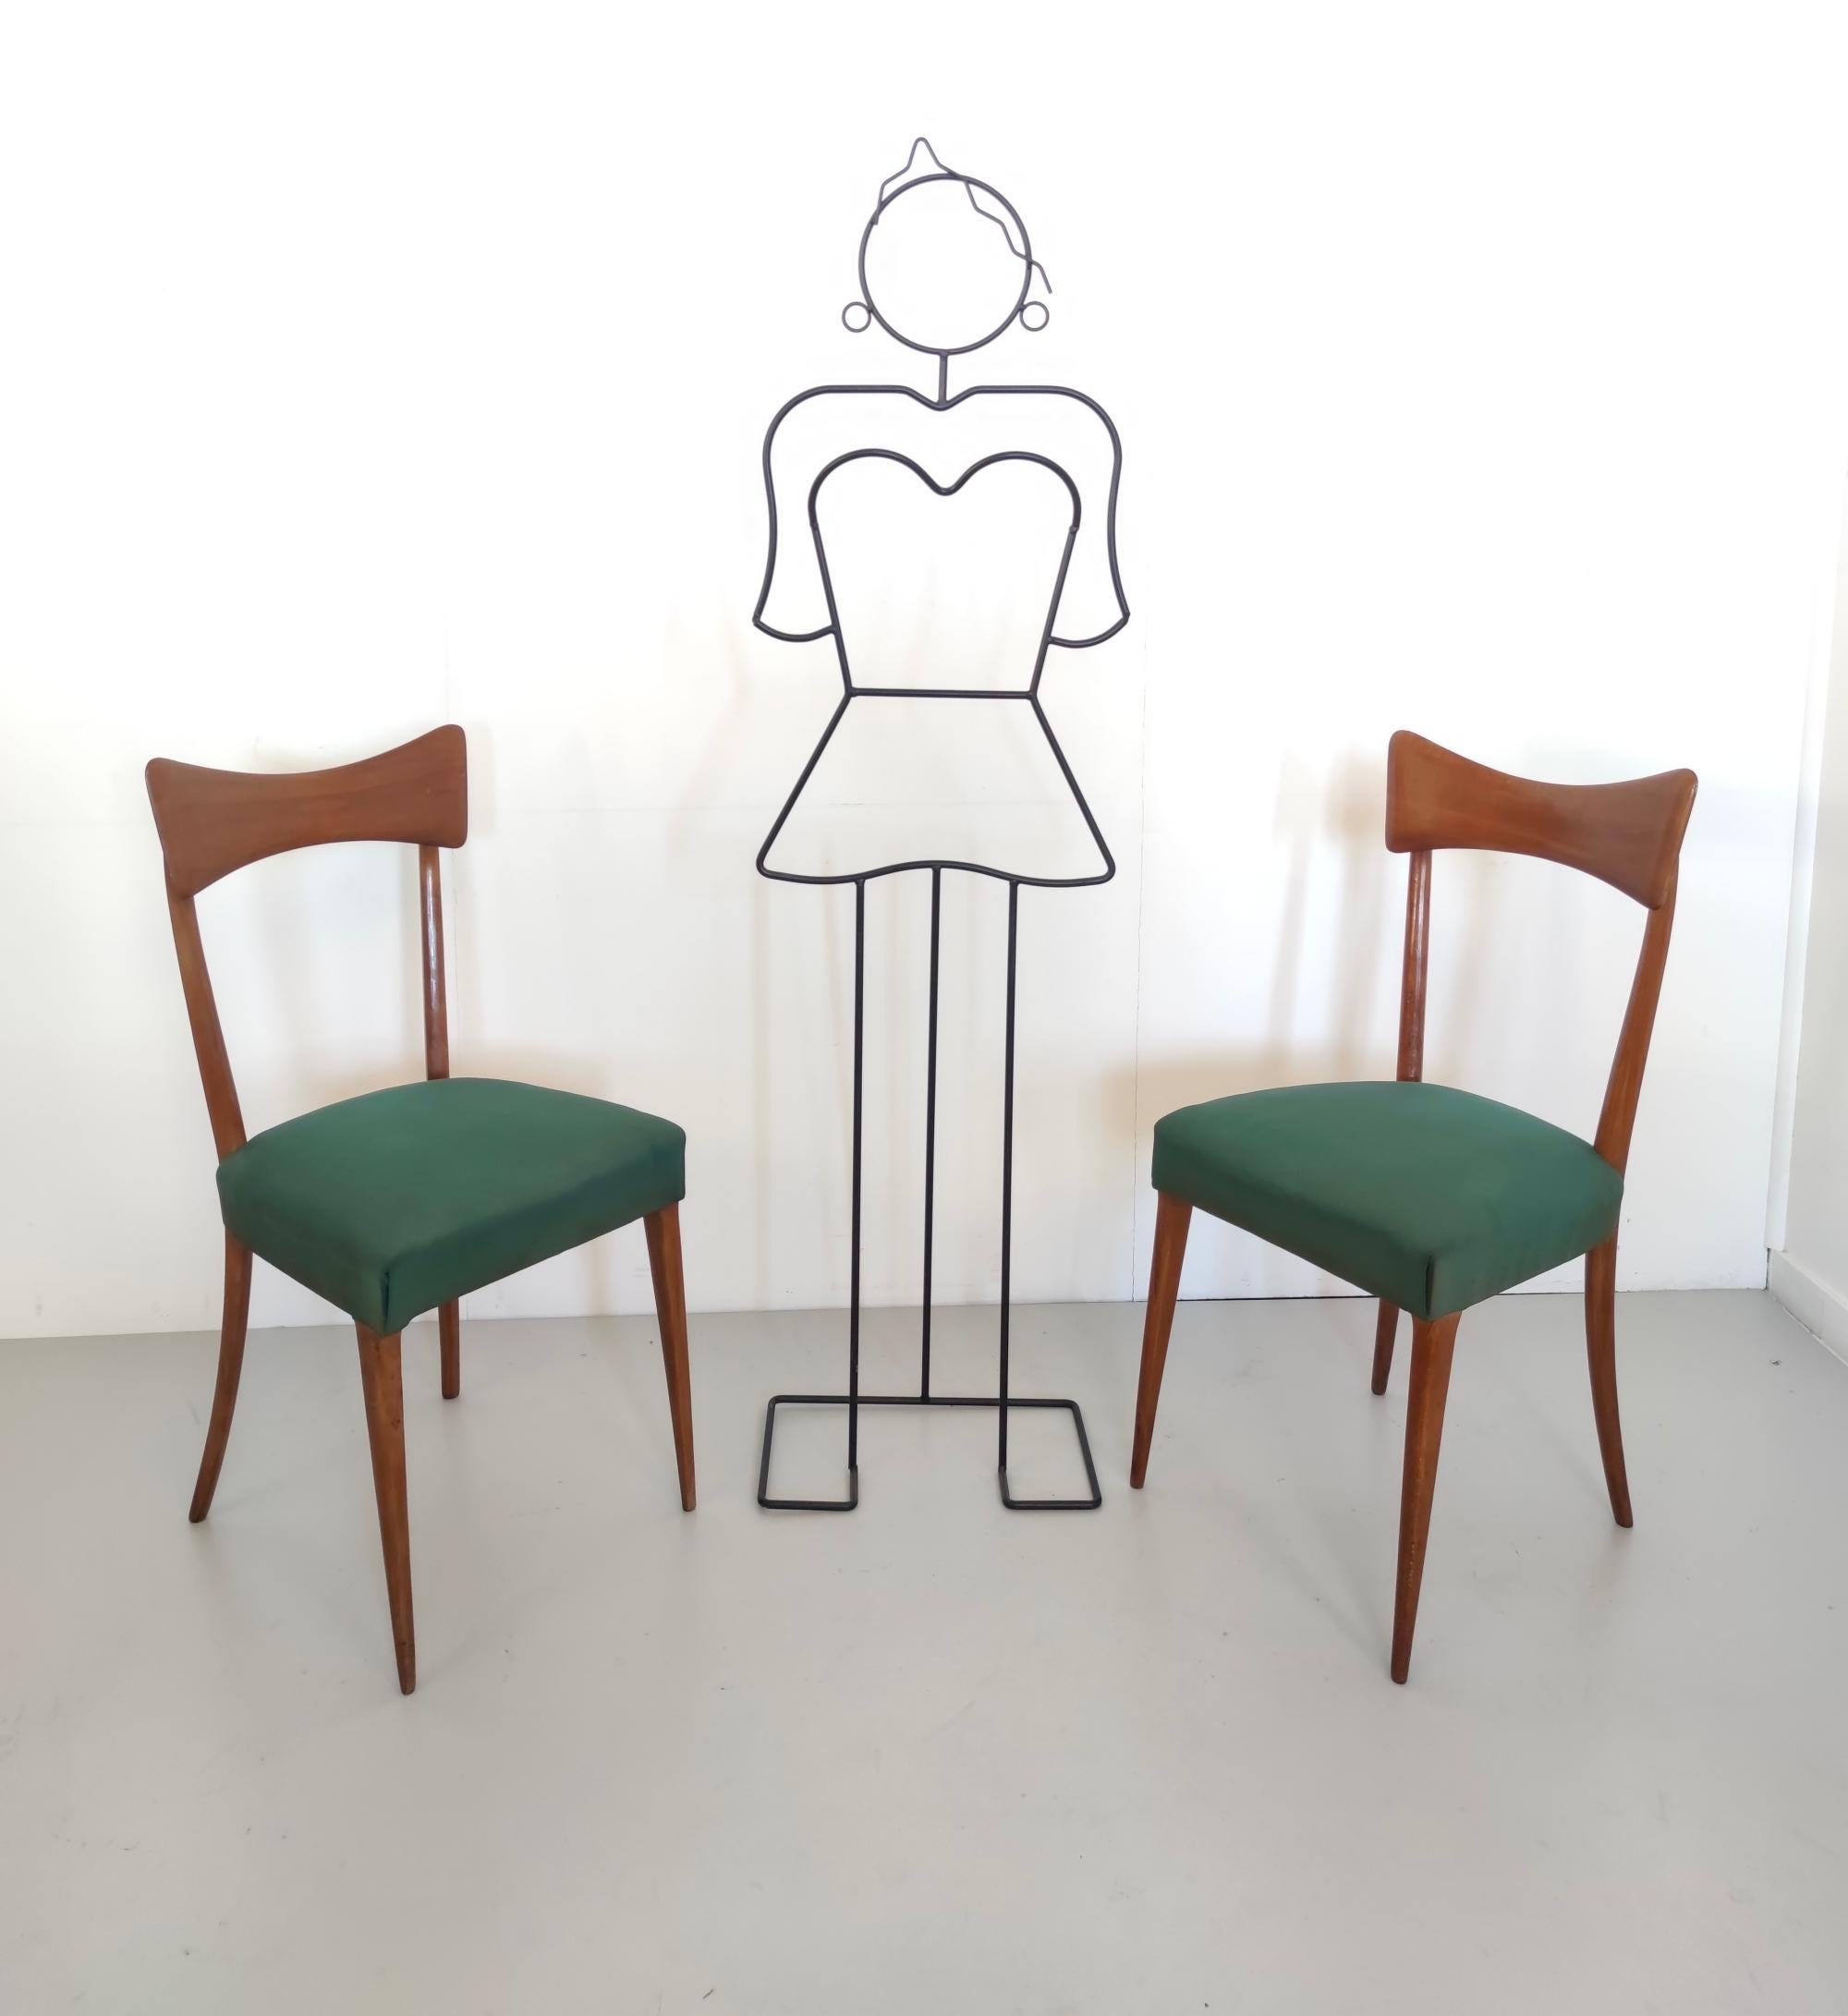 Fabriqué à Cantù, Italie, 1955.
Ces chaises sont élégantes et constituent un beau modèle emblématique du design italien. 
Elles sont dotées d'un cadre en hêtre et d'un revêtement en daim vert foncé. 
Ils peuvent présenter de légères traces